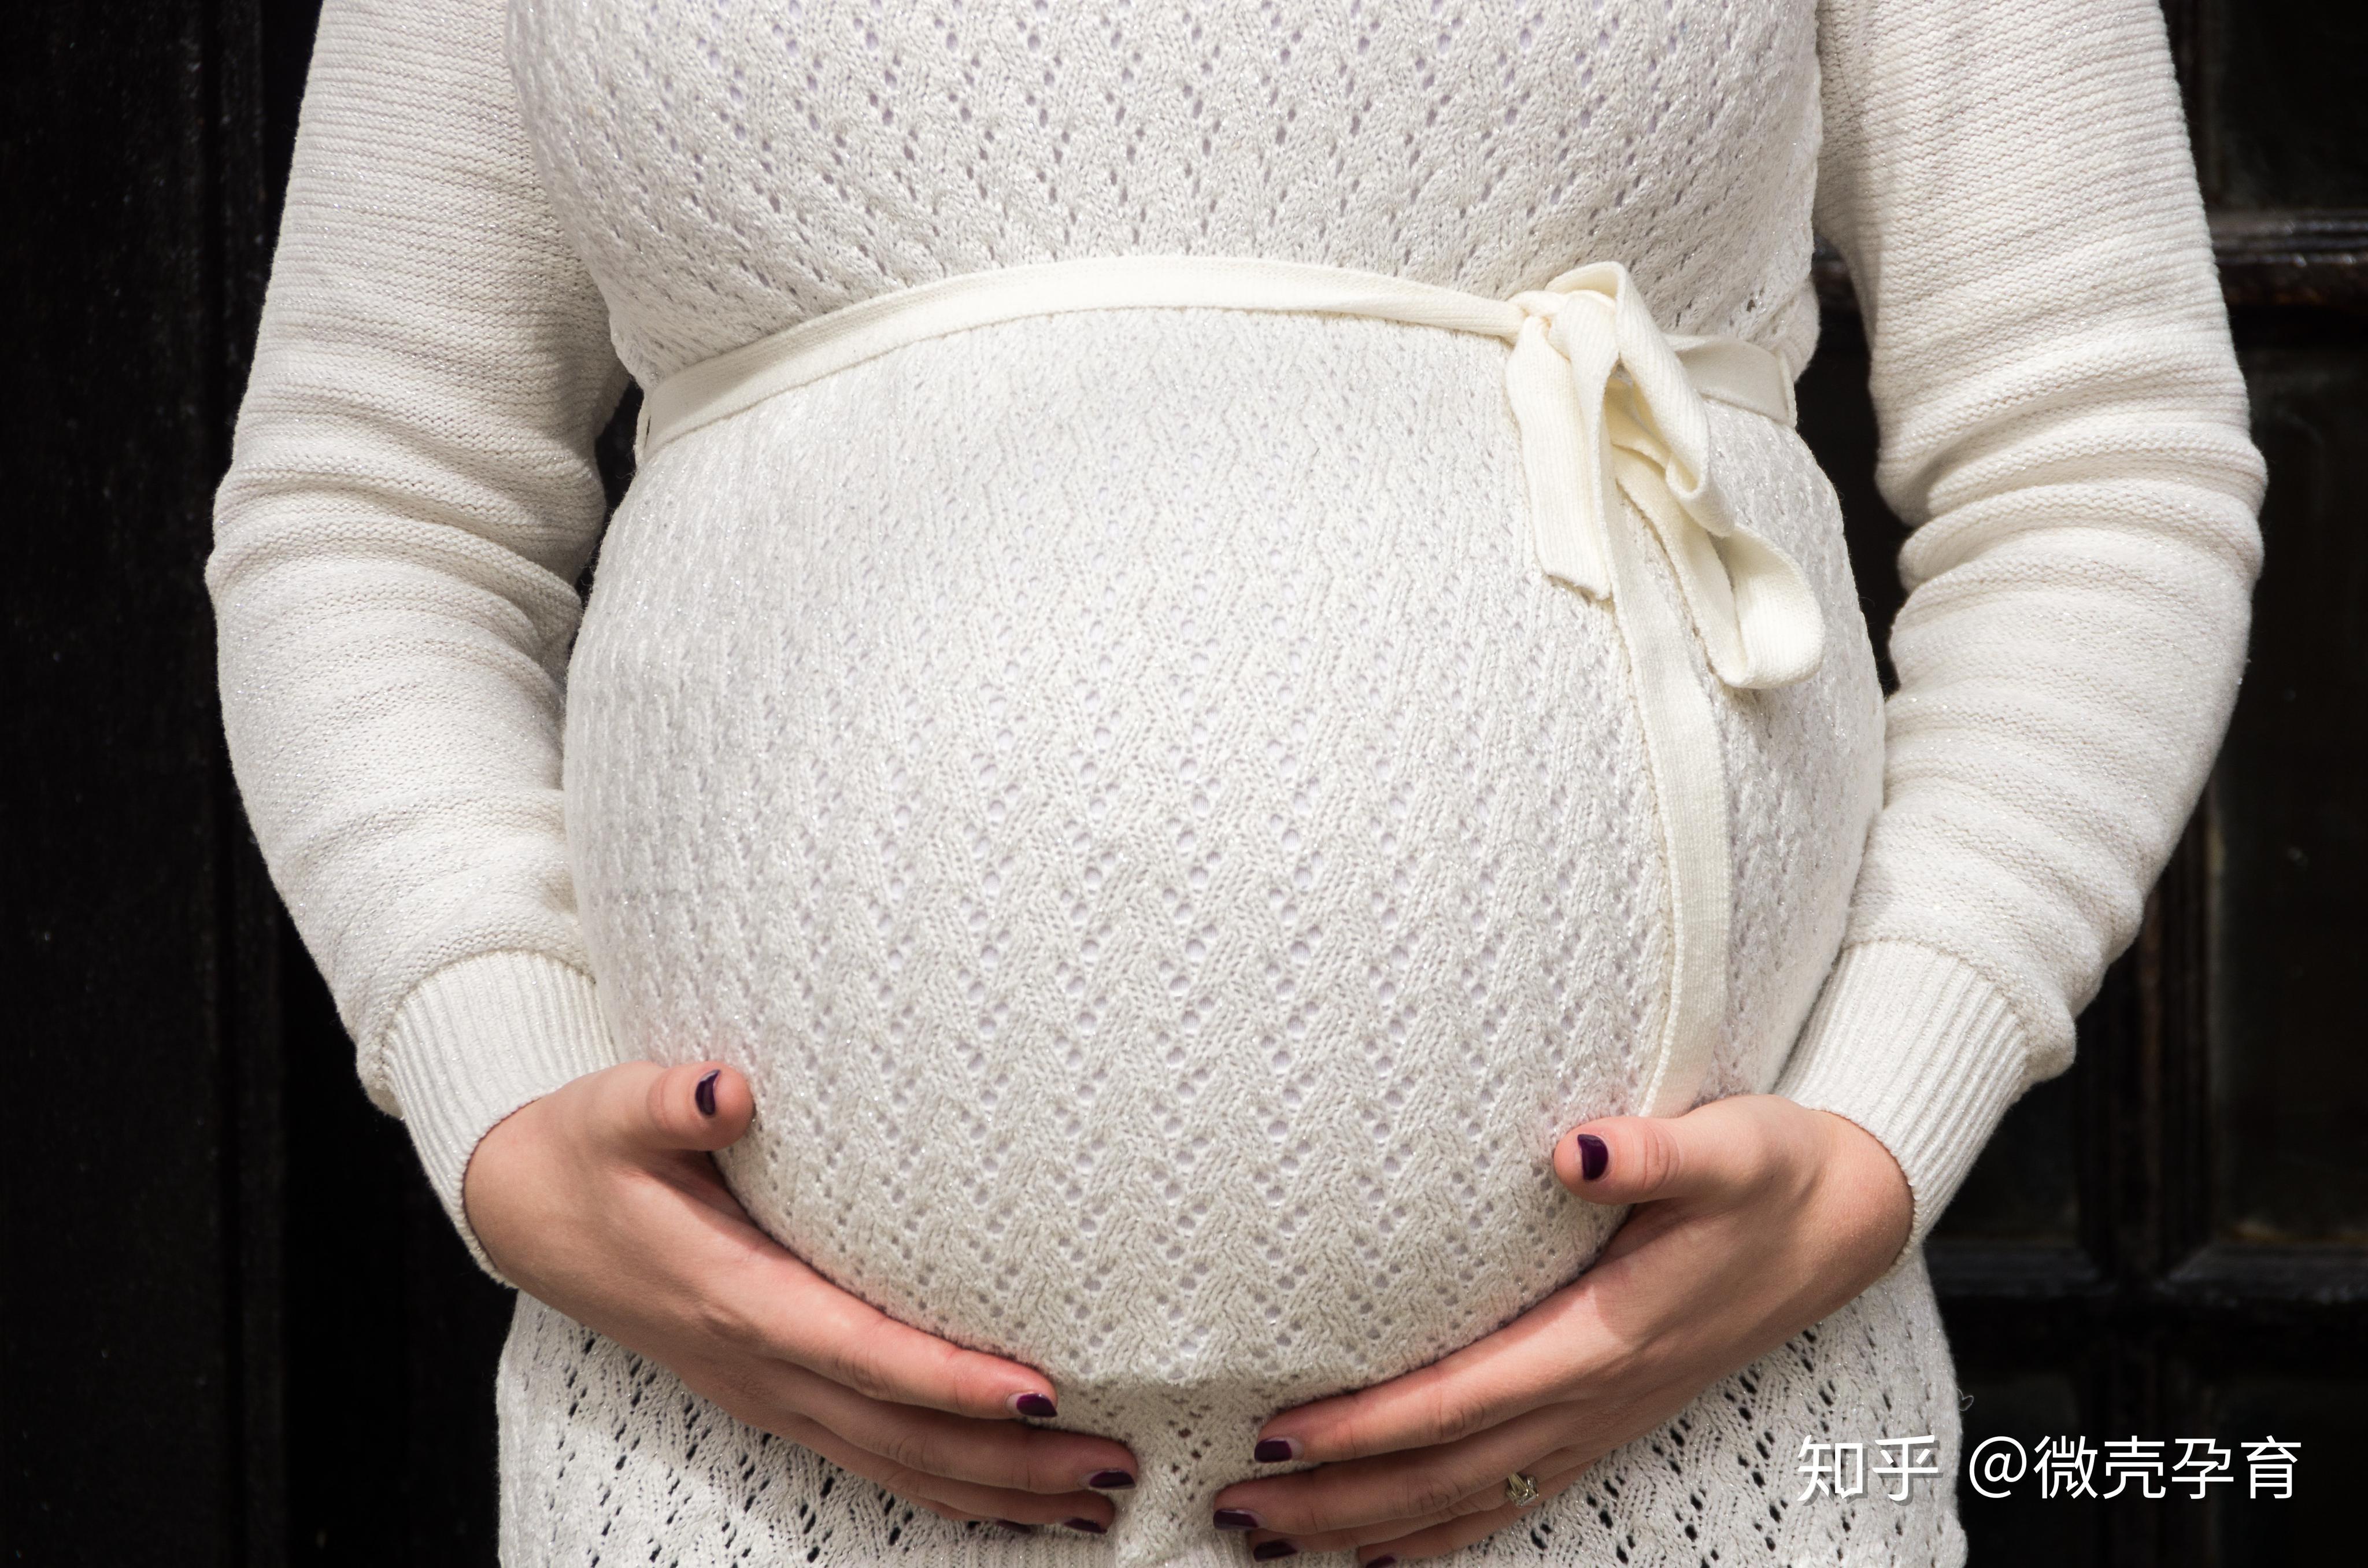 36岁产妇顺产4.6公斤巨大宝宝 专家提醒：孕期别盲目进补，宝宝体重最好约3公斤-荆楚网-湖北日报网